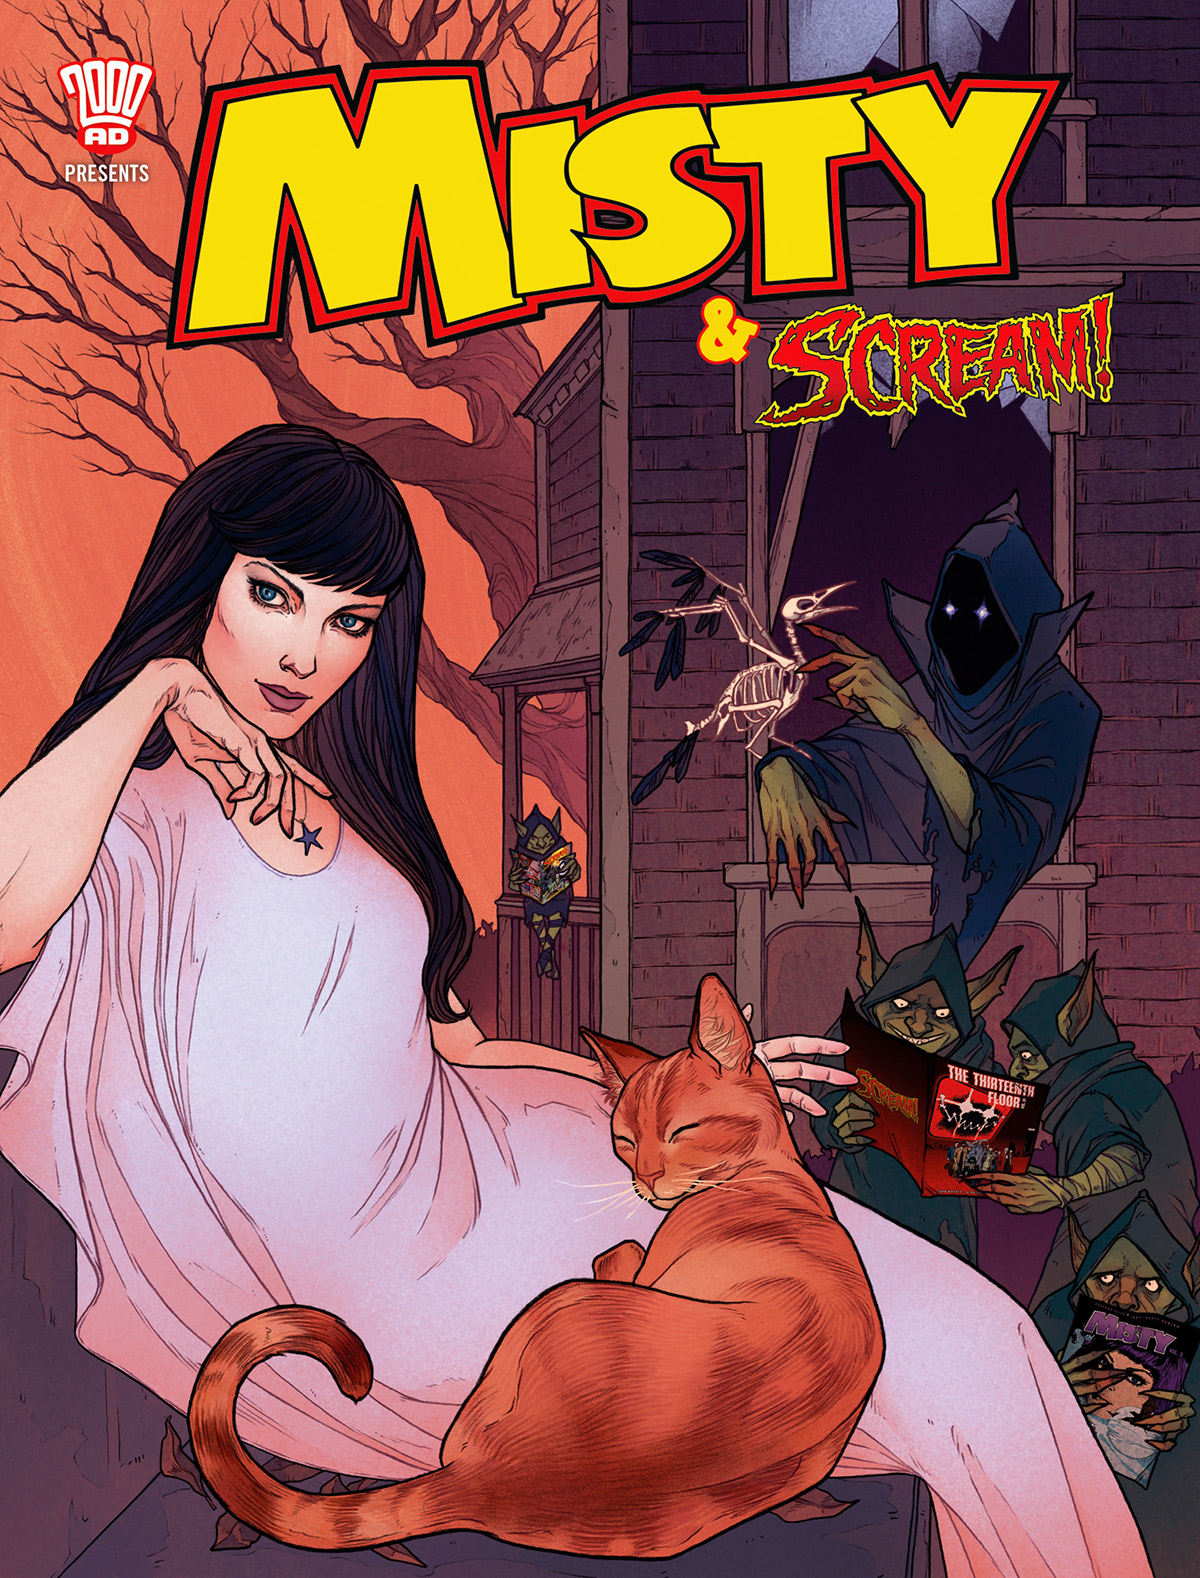 Misty and Scream  Special 2018 - Variant Cover by Lenka Šimečková